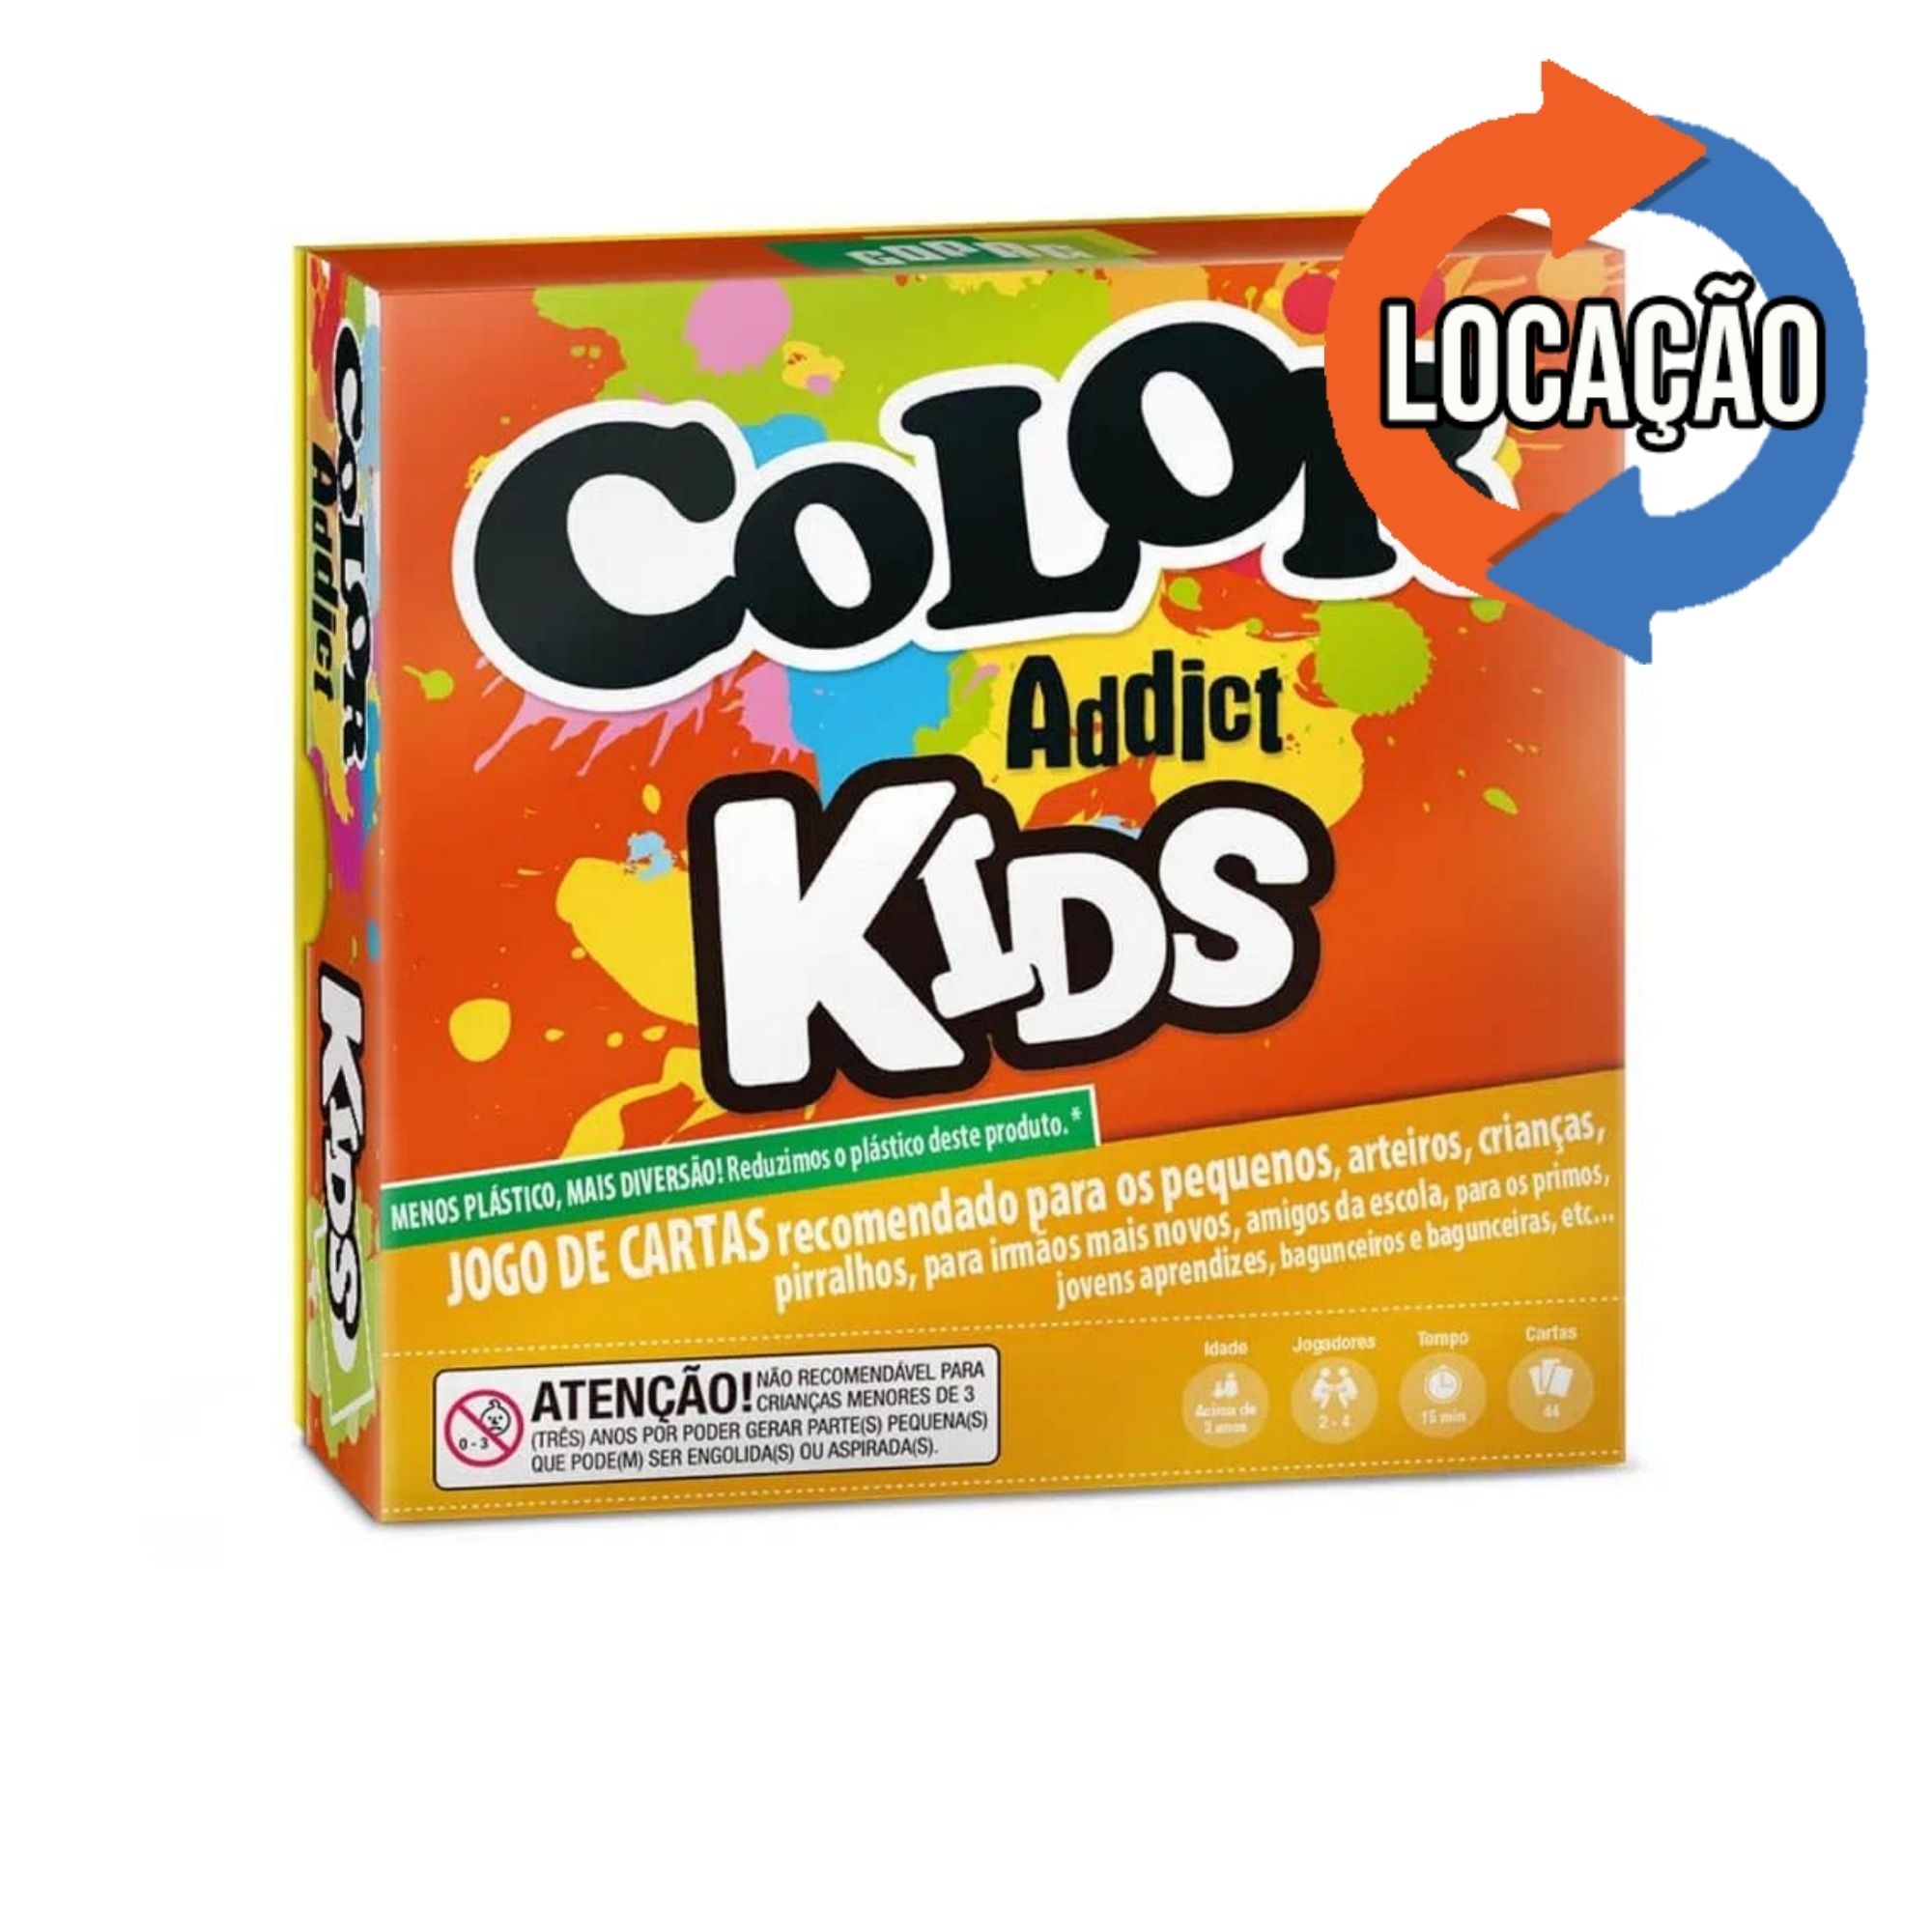 Color Addict Kids (Locação)